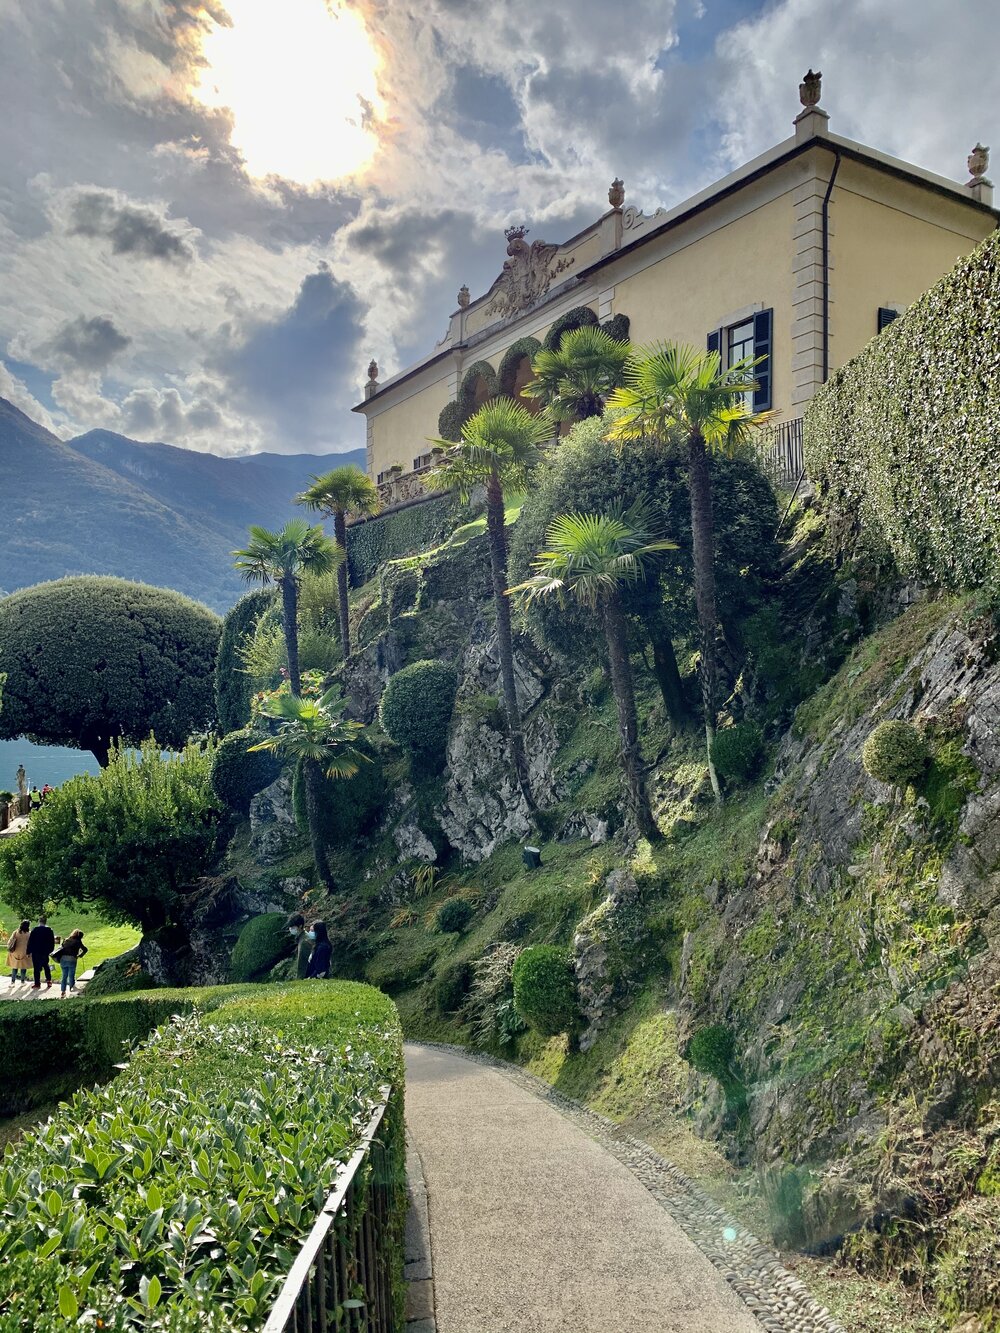 The VILLA - Villa del Balbianello | Lake Como